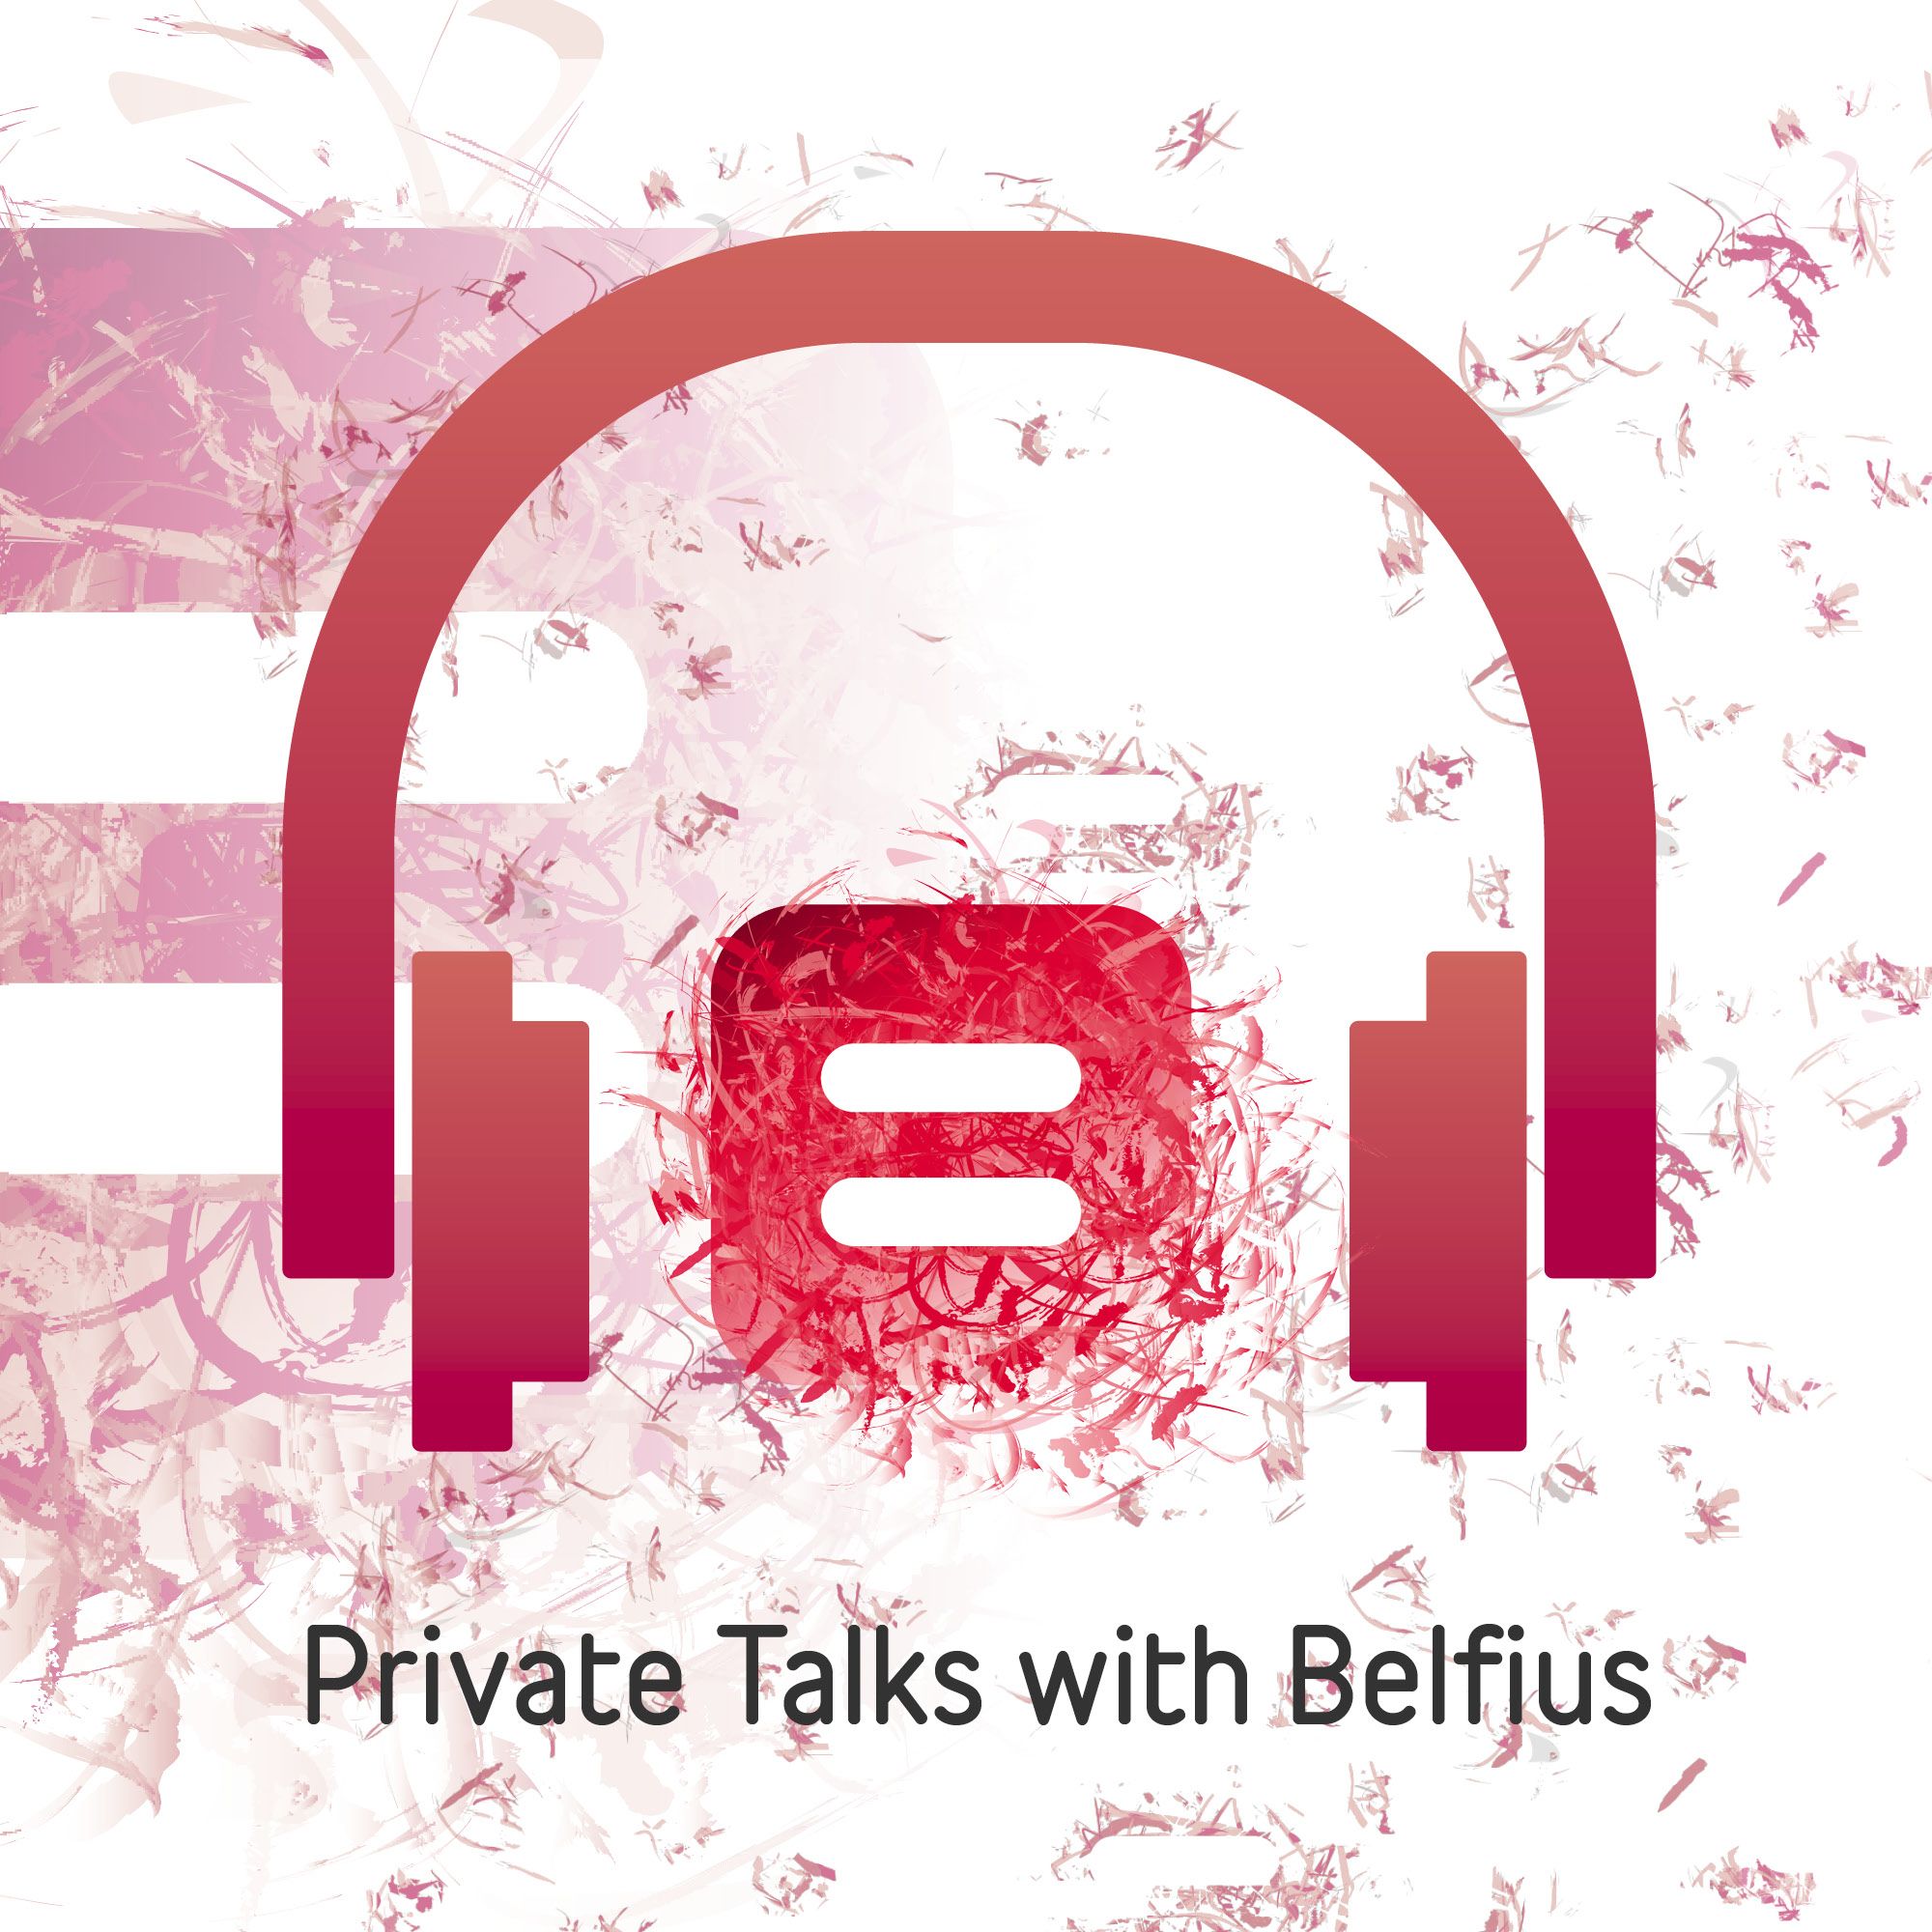 Private Talks with Belfius